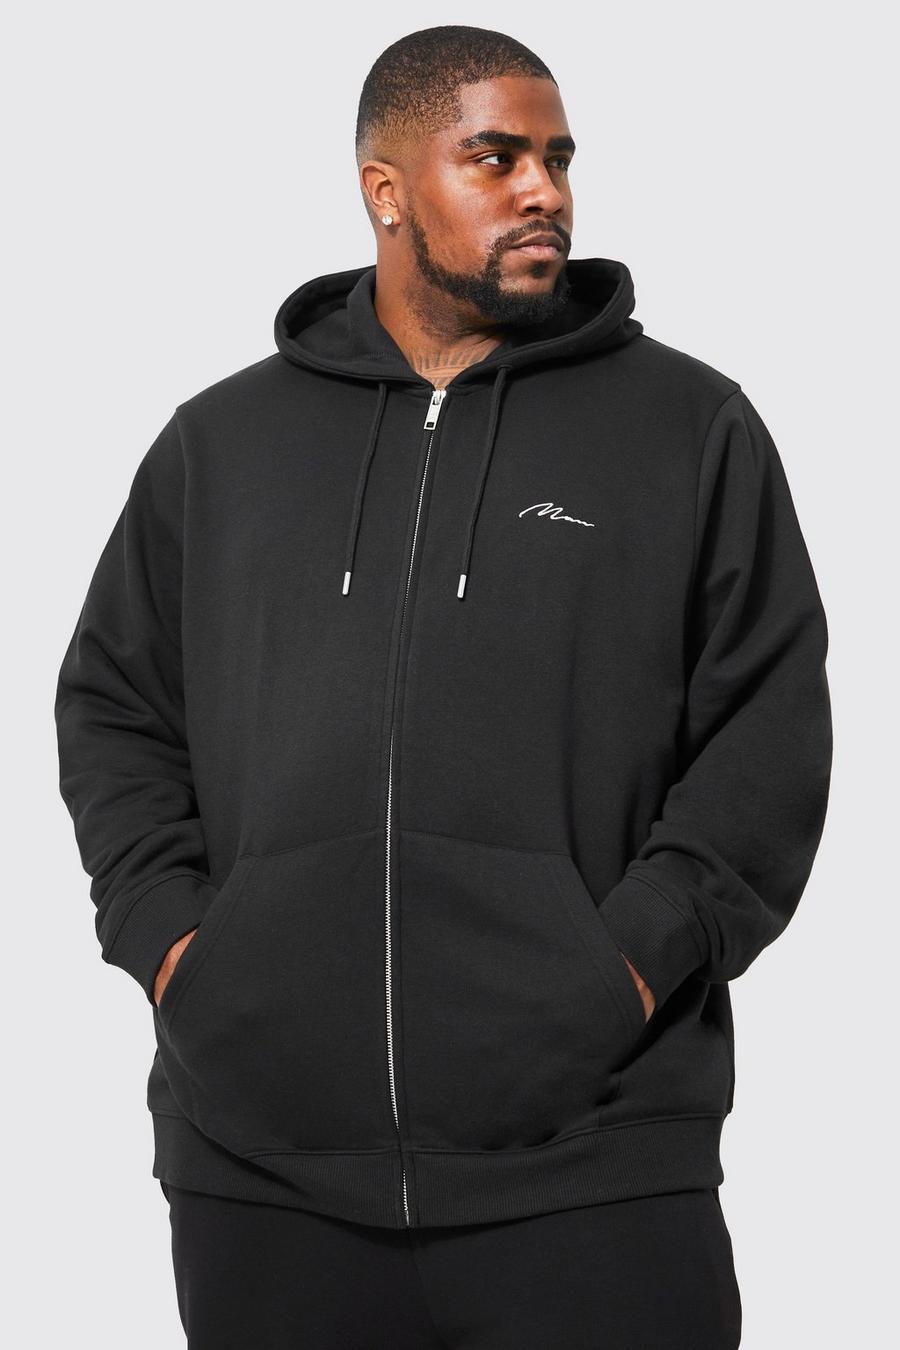 Felpa Plus Size con scritta Man, zip e cappuccio, Black nero